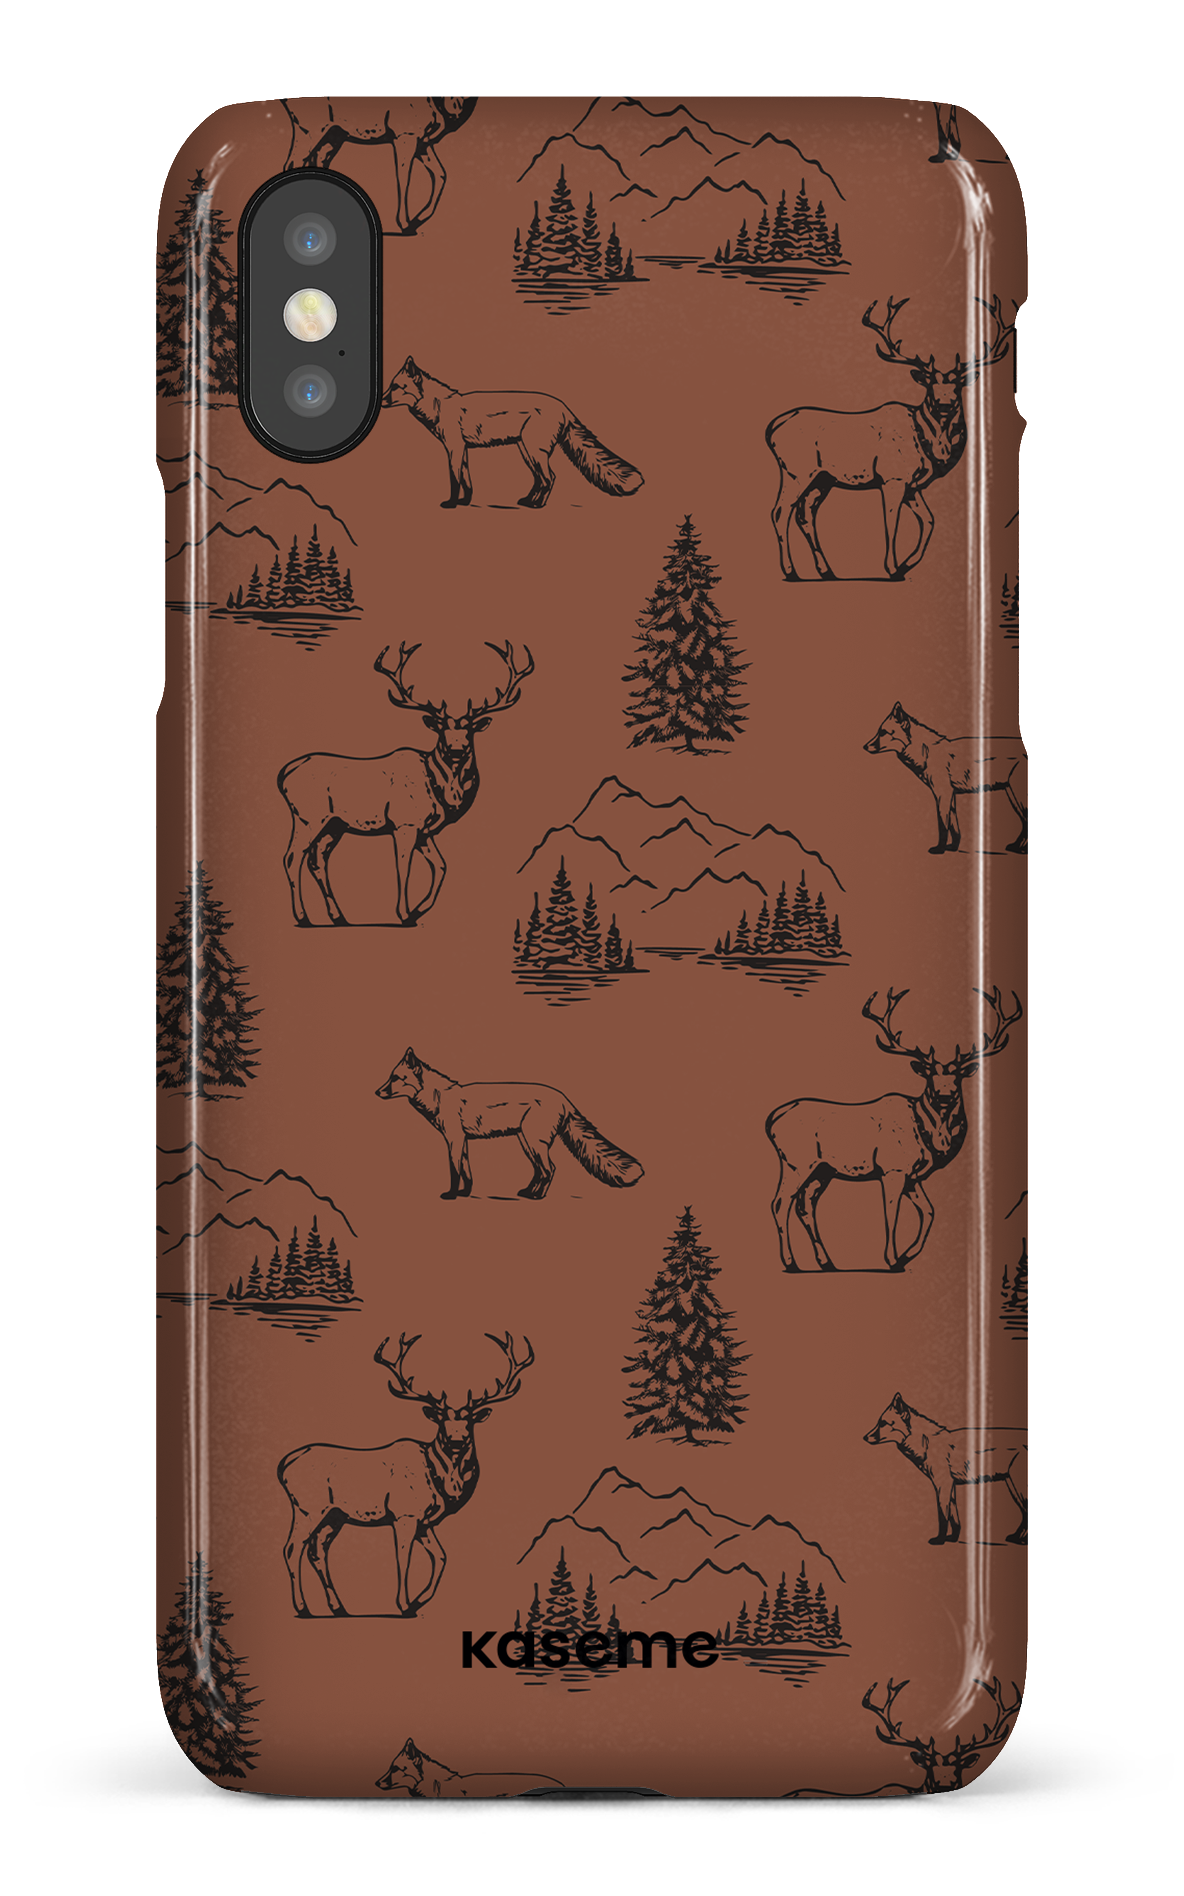 Wildlife - iPhone X/Xs